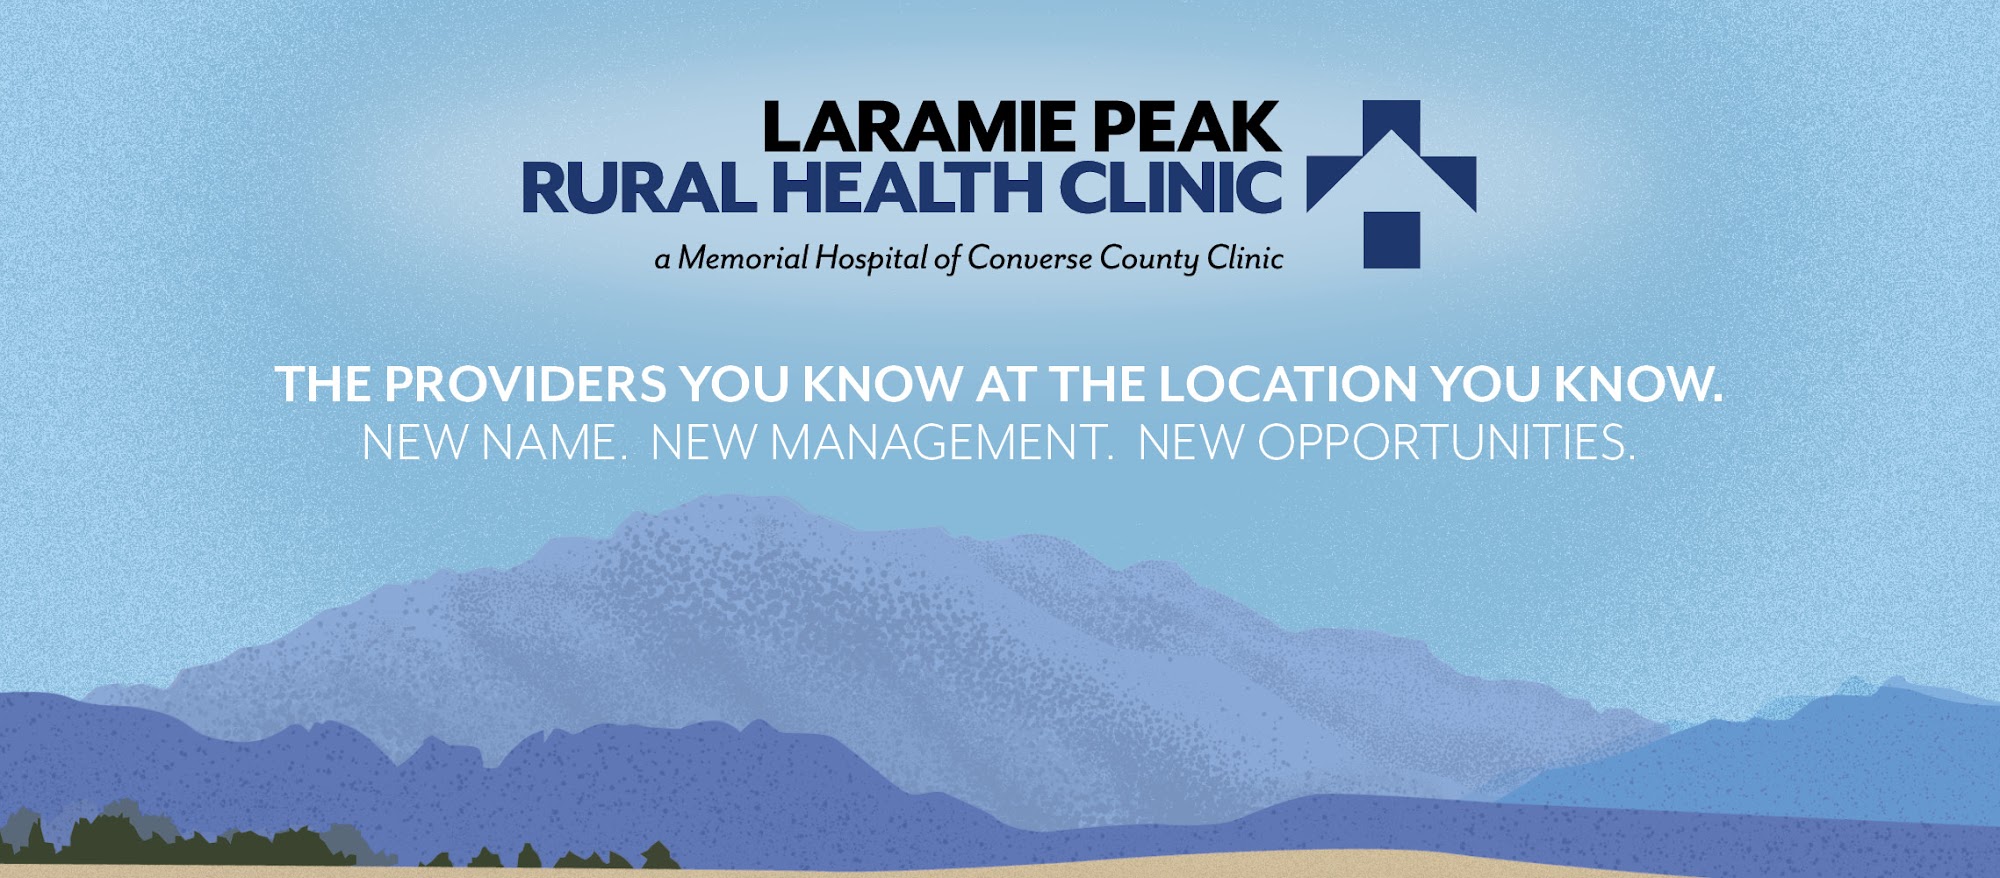 Laramie Peak Rural Health Clinic 1356 Shiek St, Wheatland Wyoming 82201